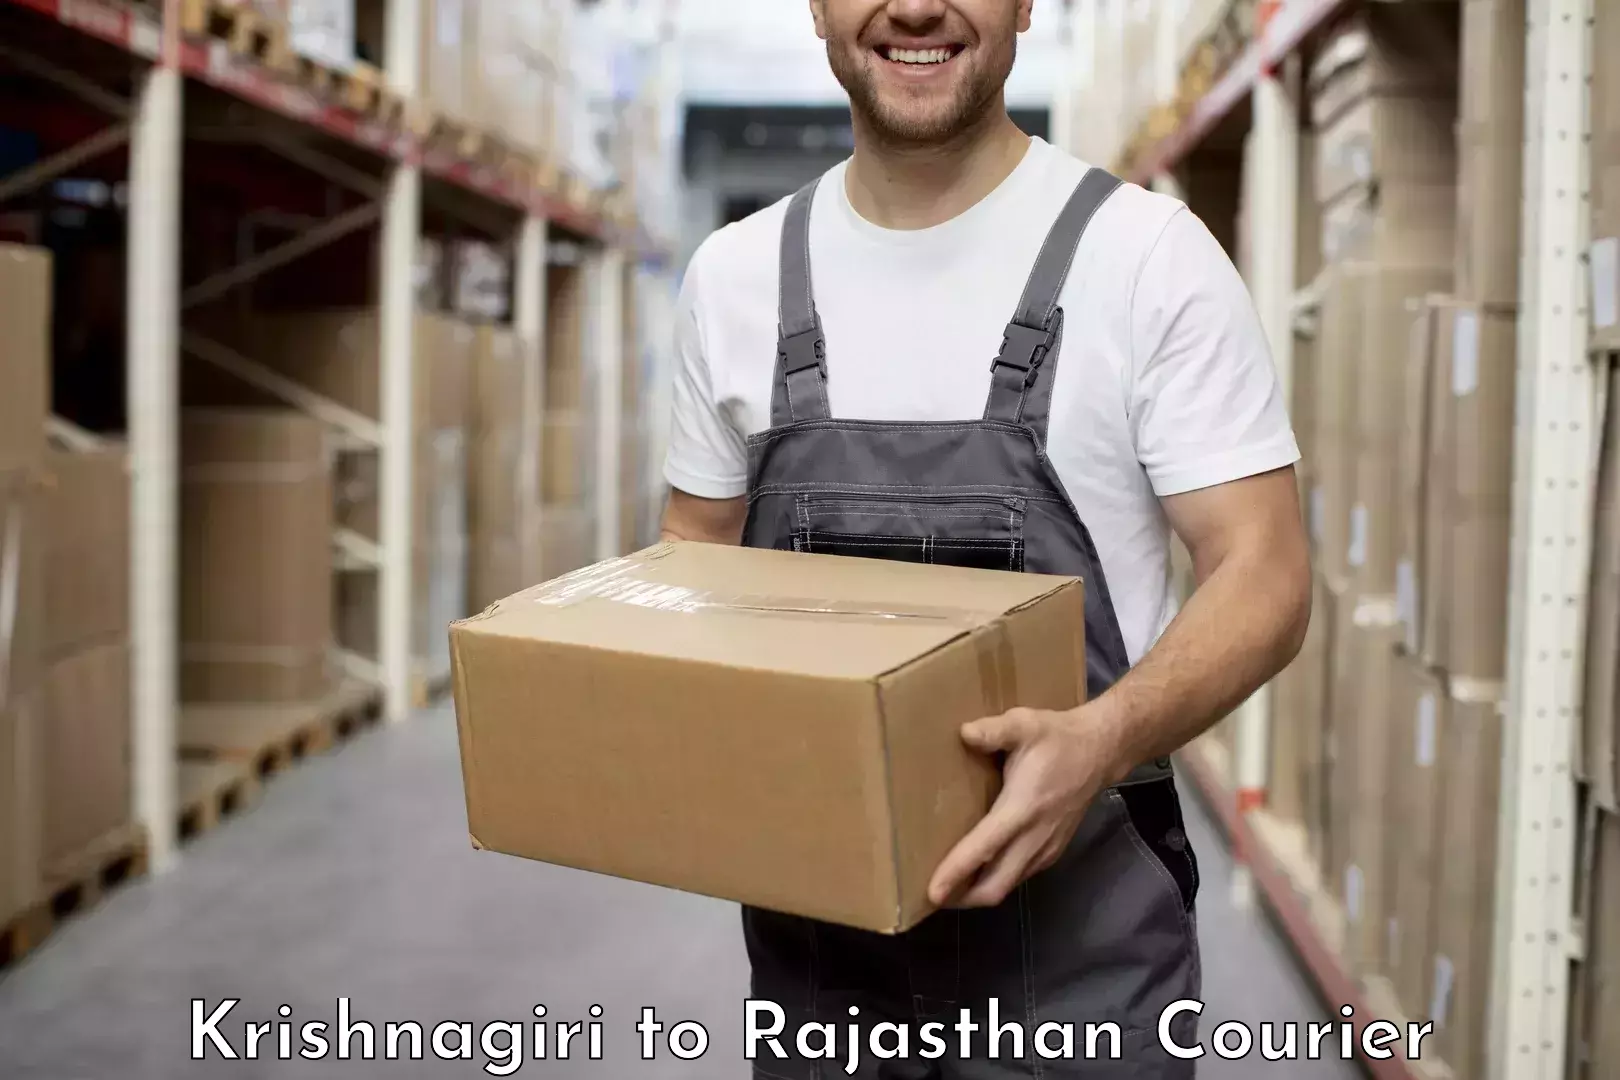 High-speed logistics services Krishnagiri to Churu